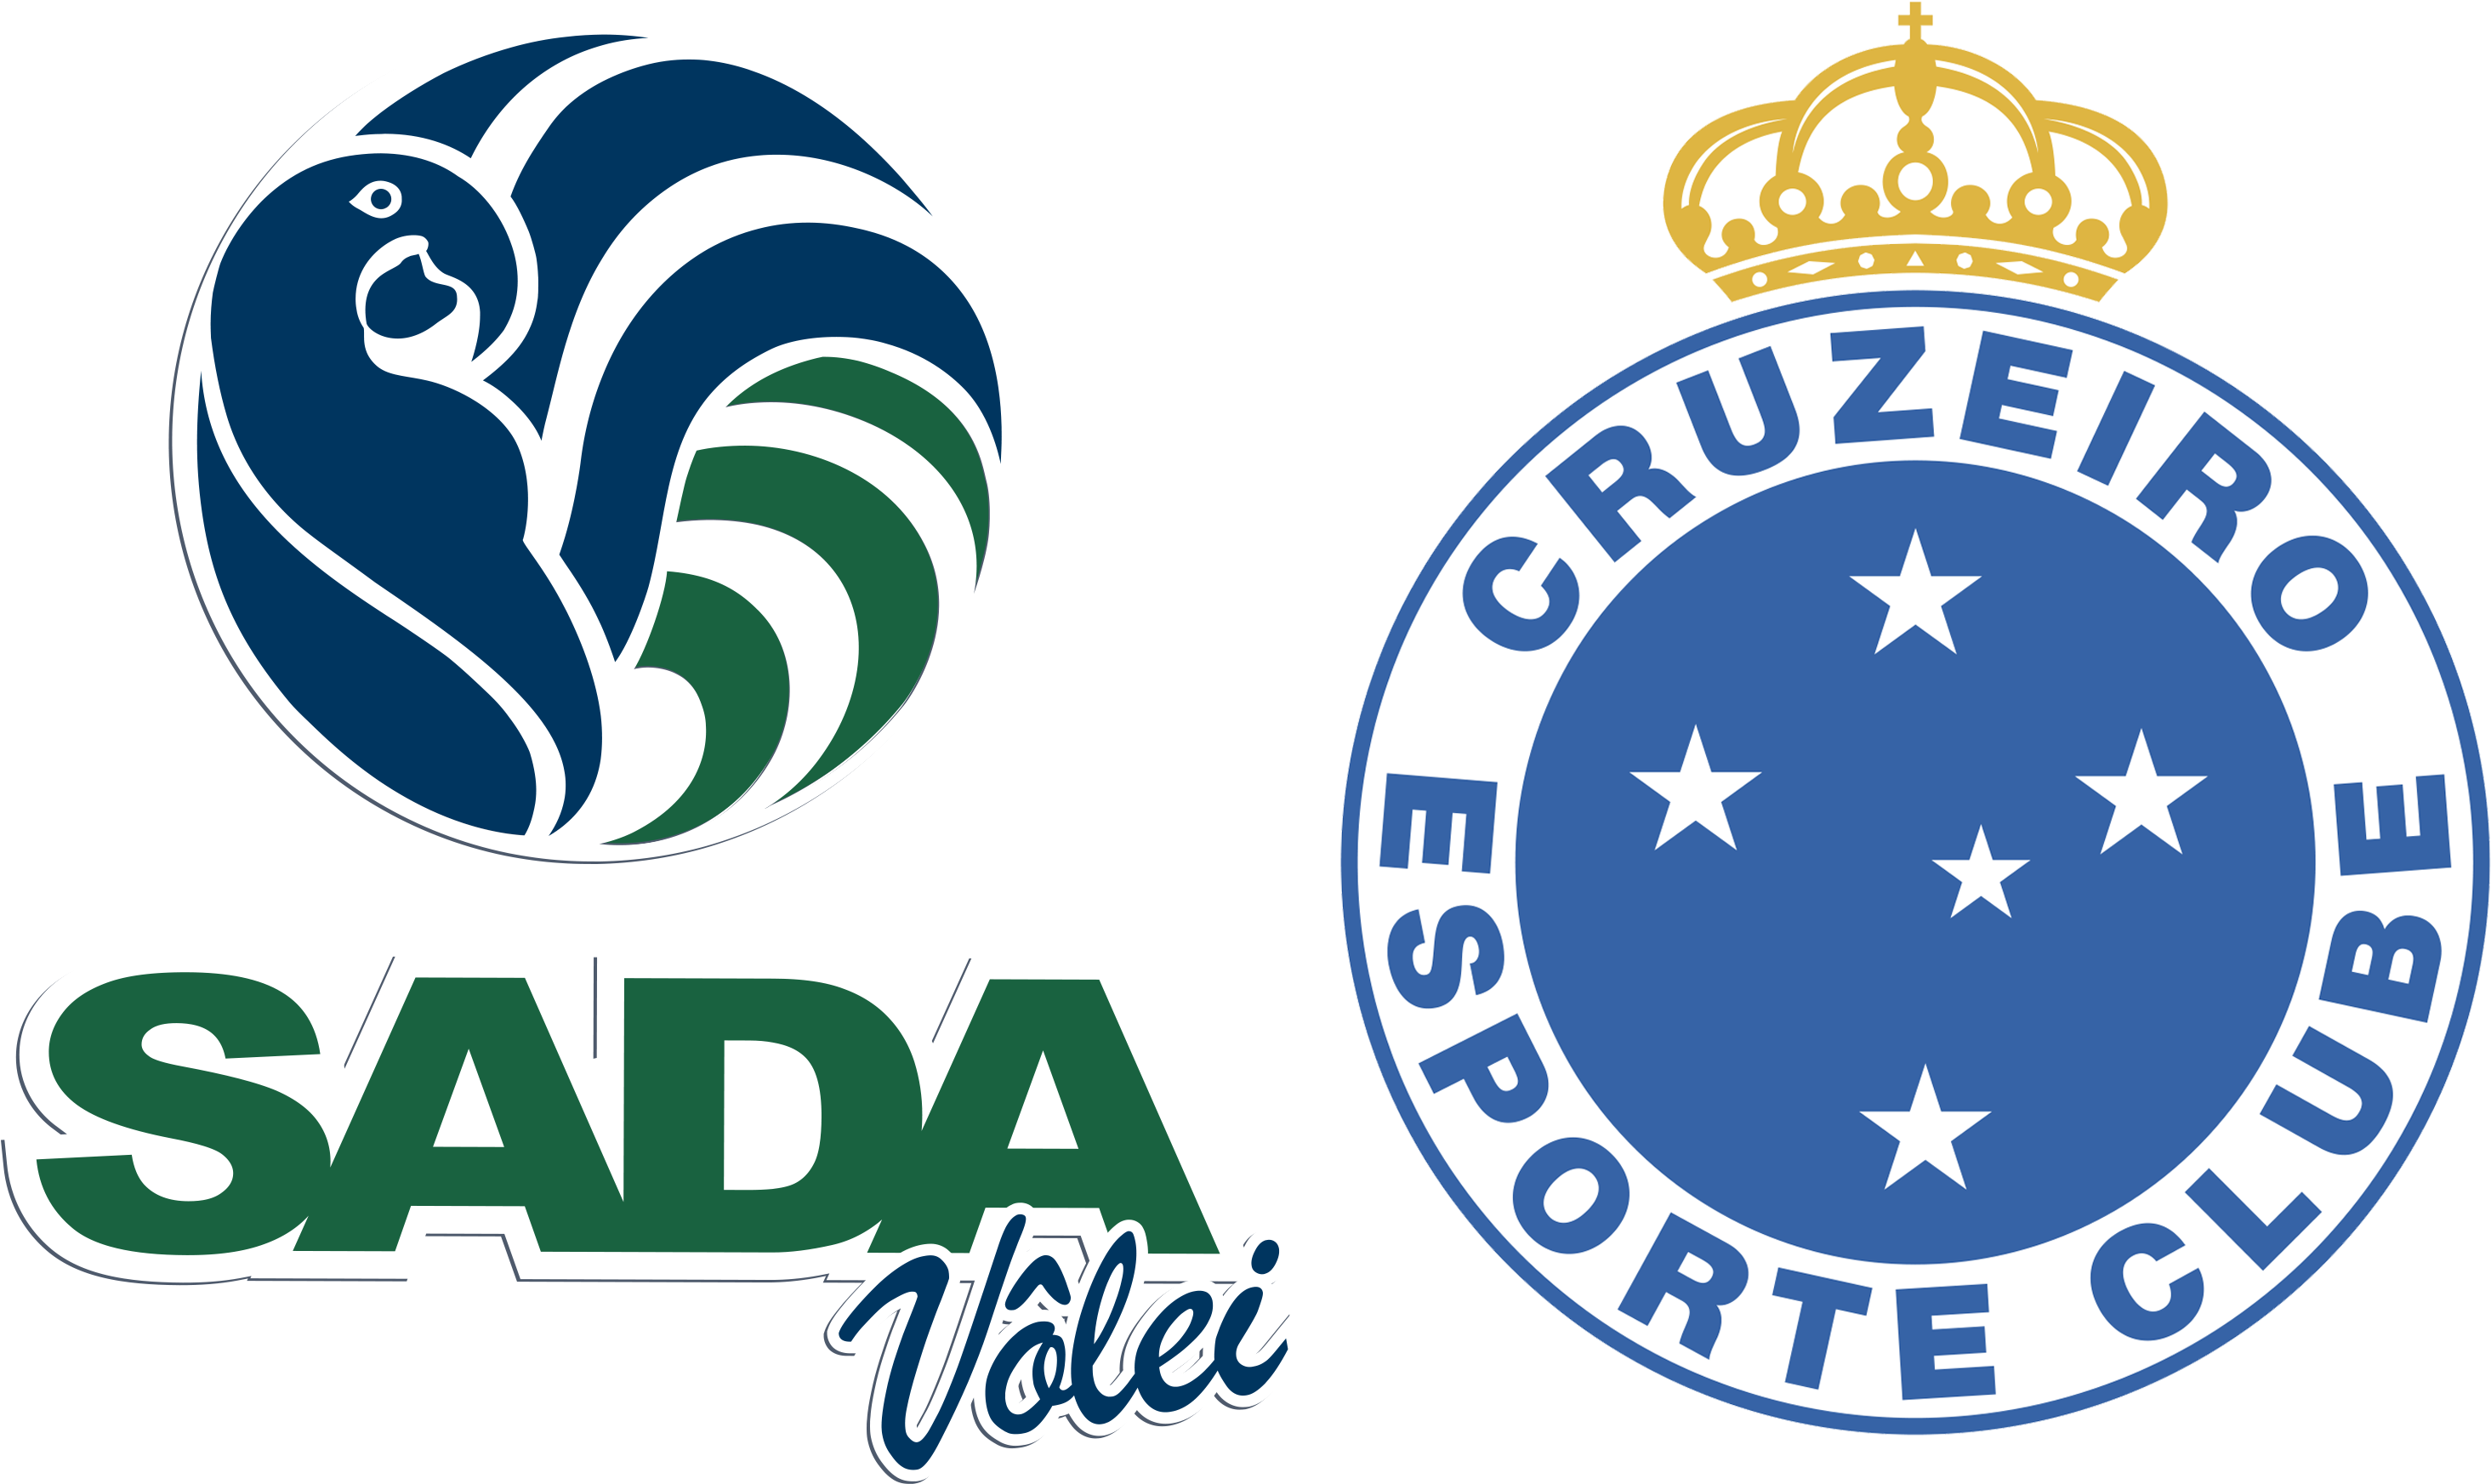 Sada Cruzeiro Logo Clipart Large Size Png Image Pikpng